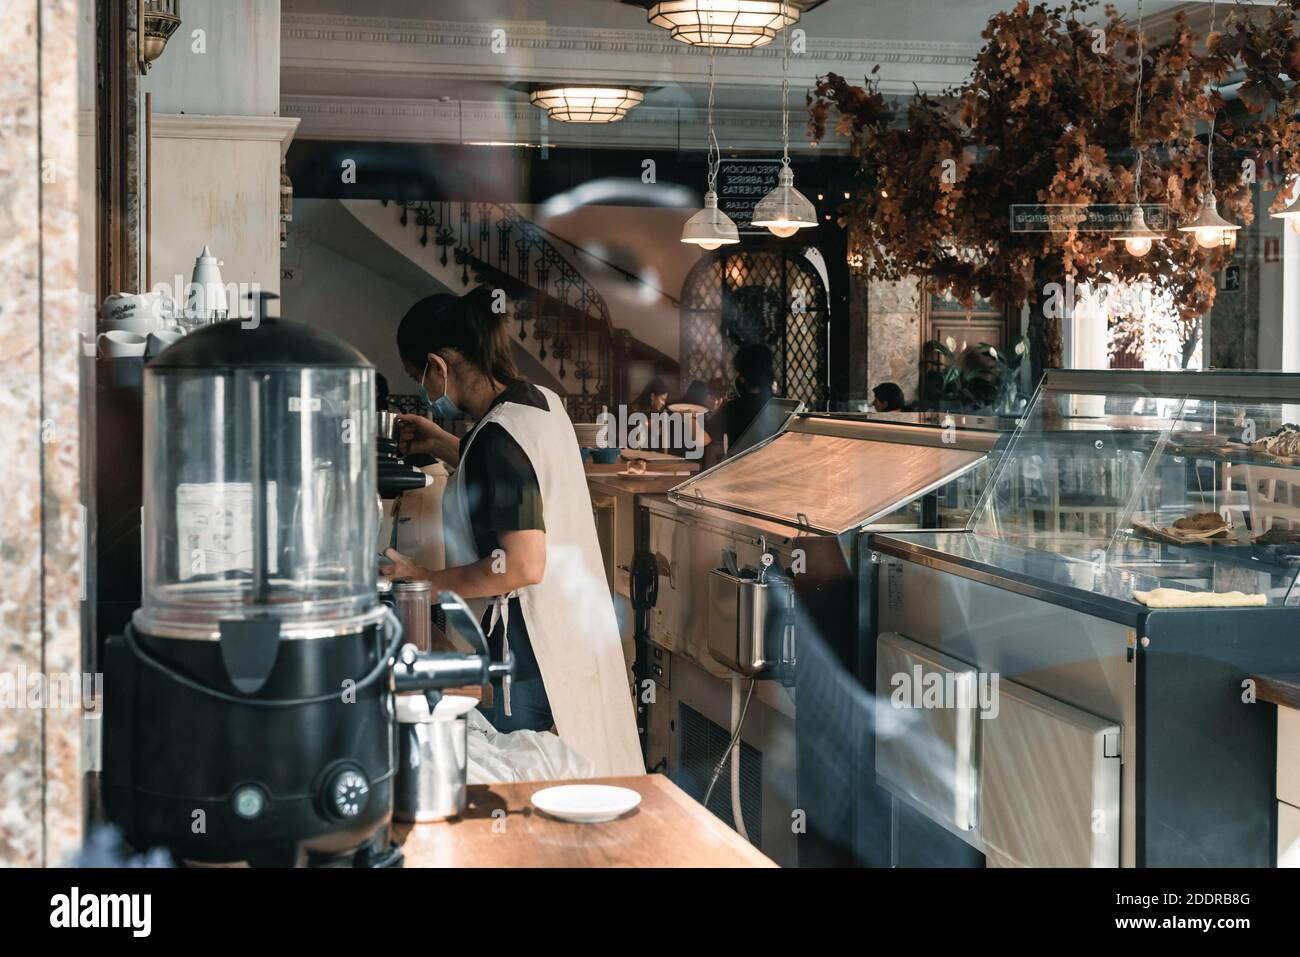 Madrid, Spanien - 11. Oktober 2020: Blick durch das Fenster eines Cafés mit Vintage-Dekoration und einer Kellnerin, die Kaffee zubereitet. Stockfoto